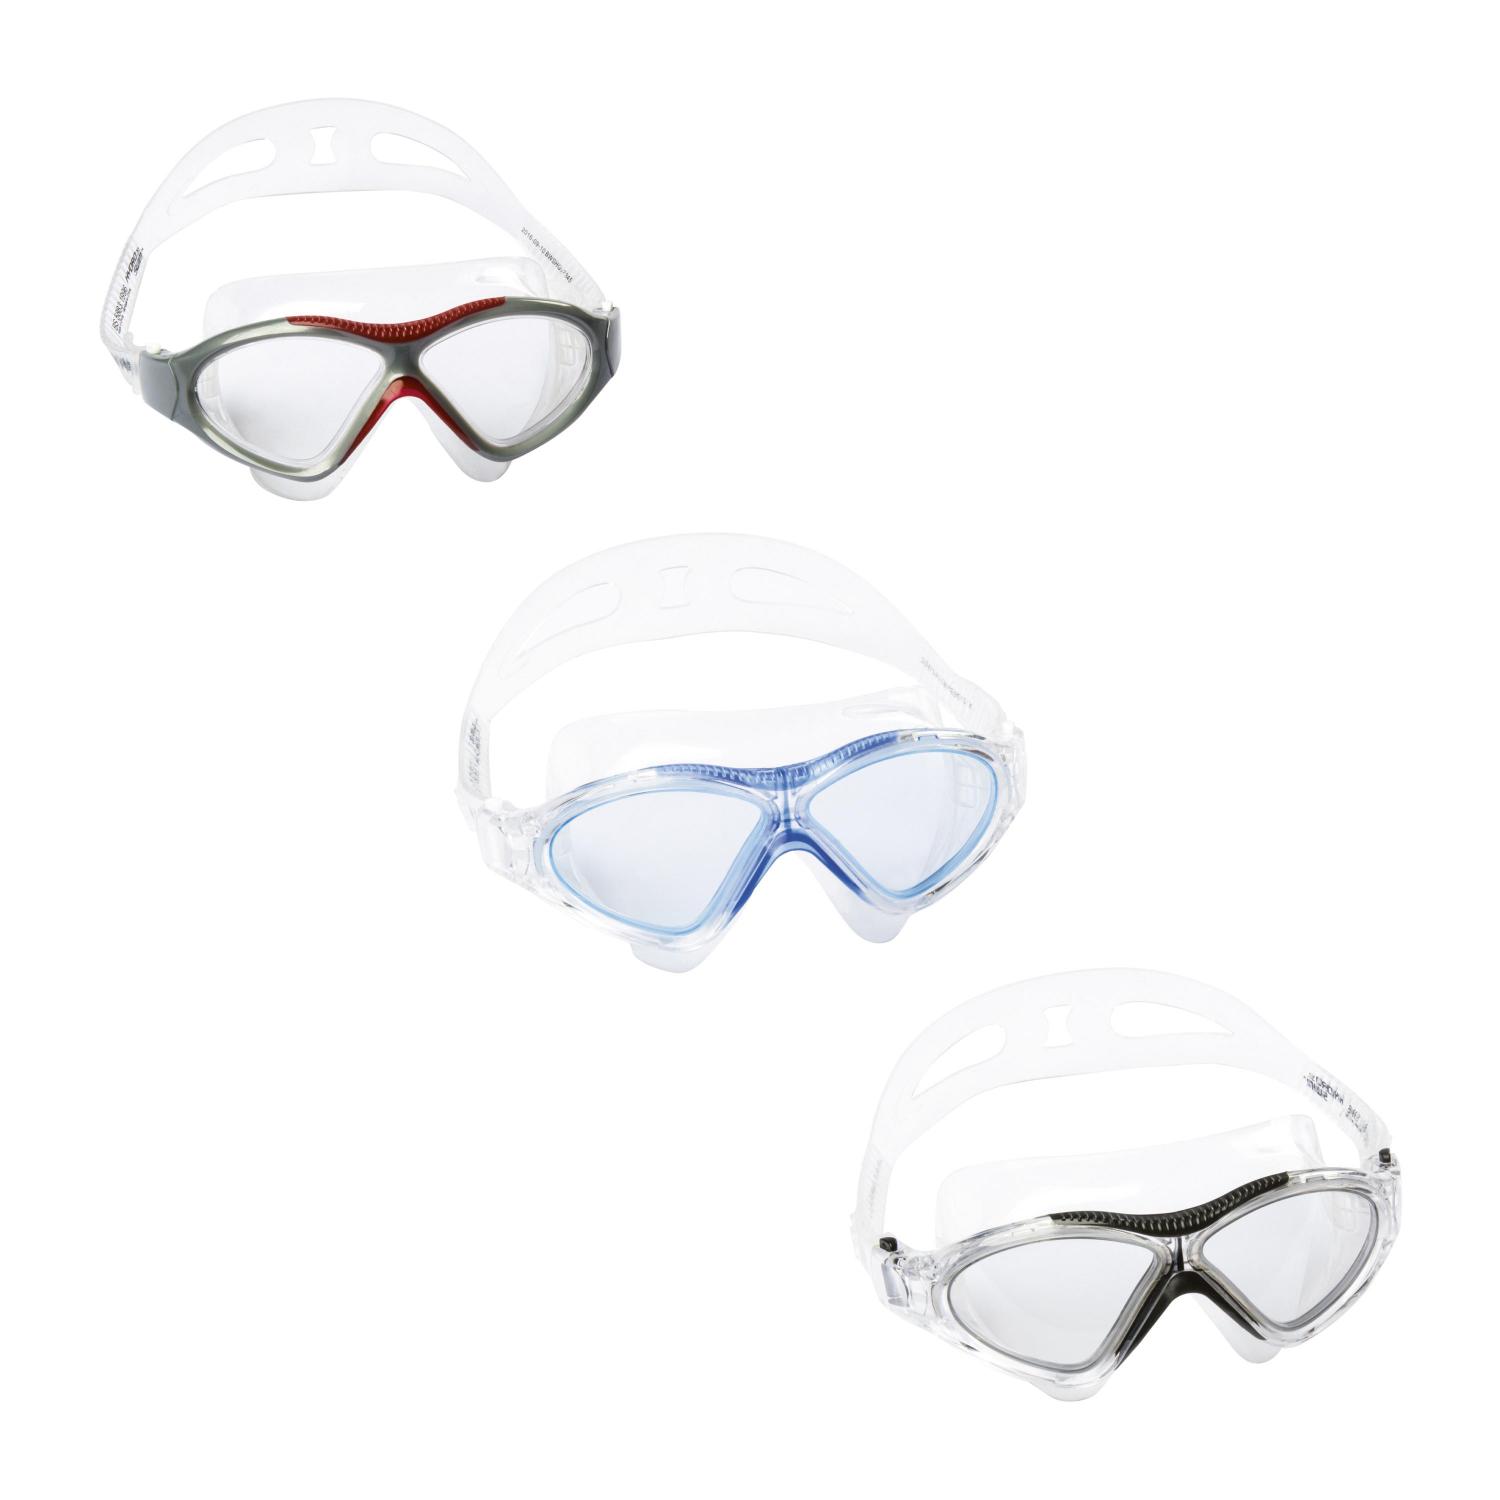 Очки для плавания "Stingray Adult" от 14 лет, 3 цвета, Bestway 21076 BW